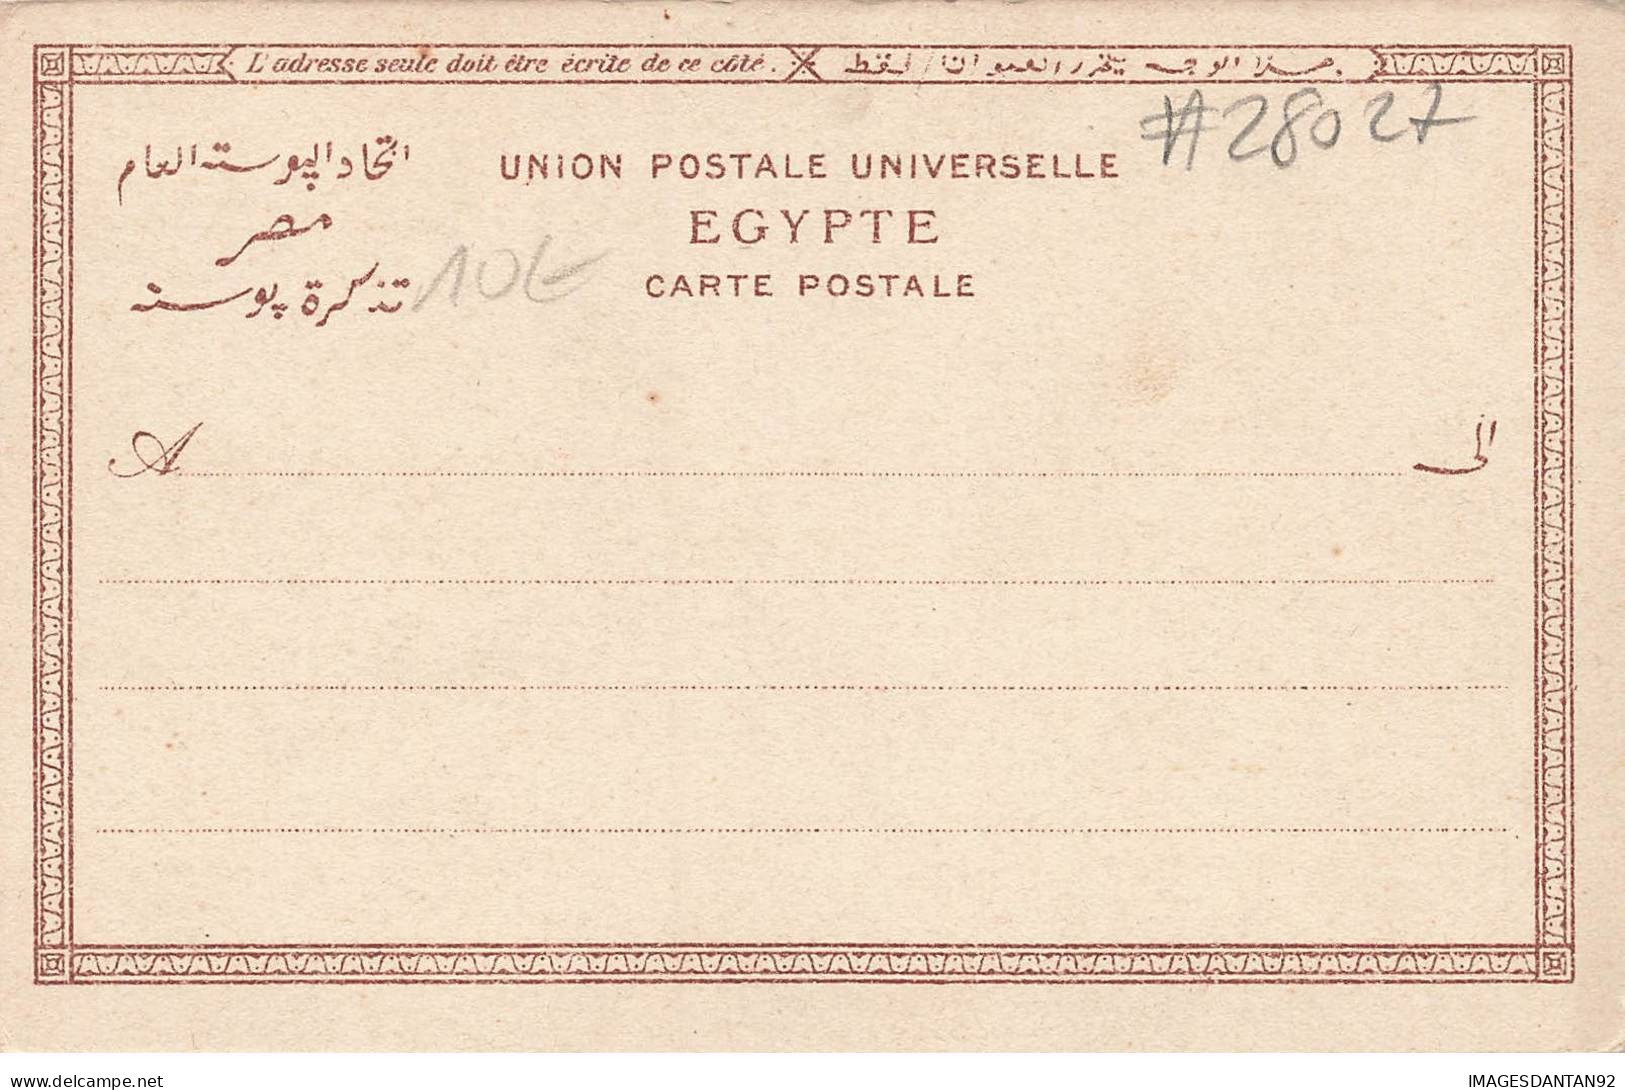 EGYPTE #28027 THE SPHINX - Sphinx